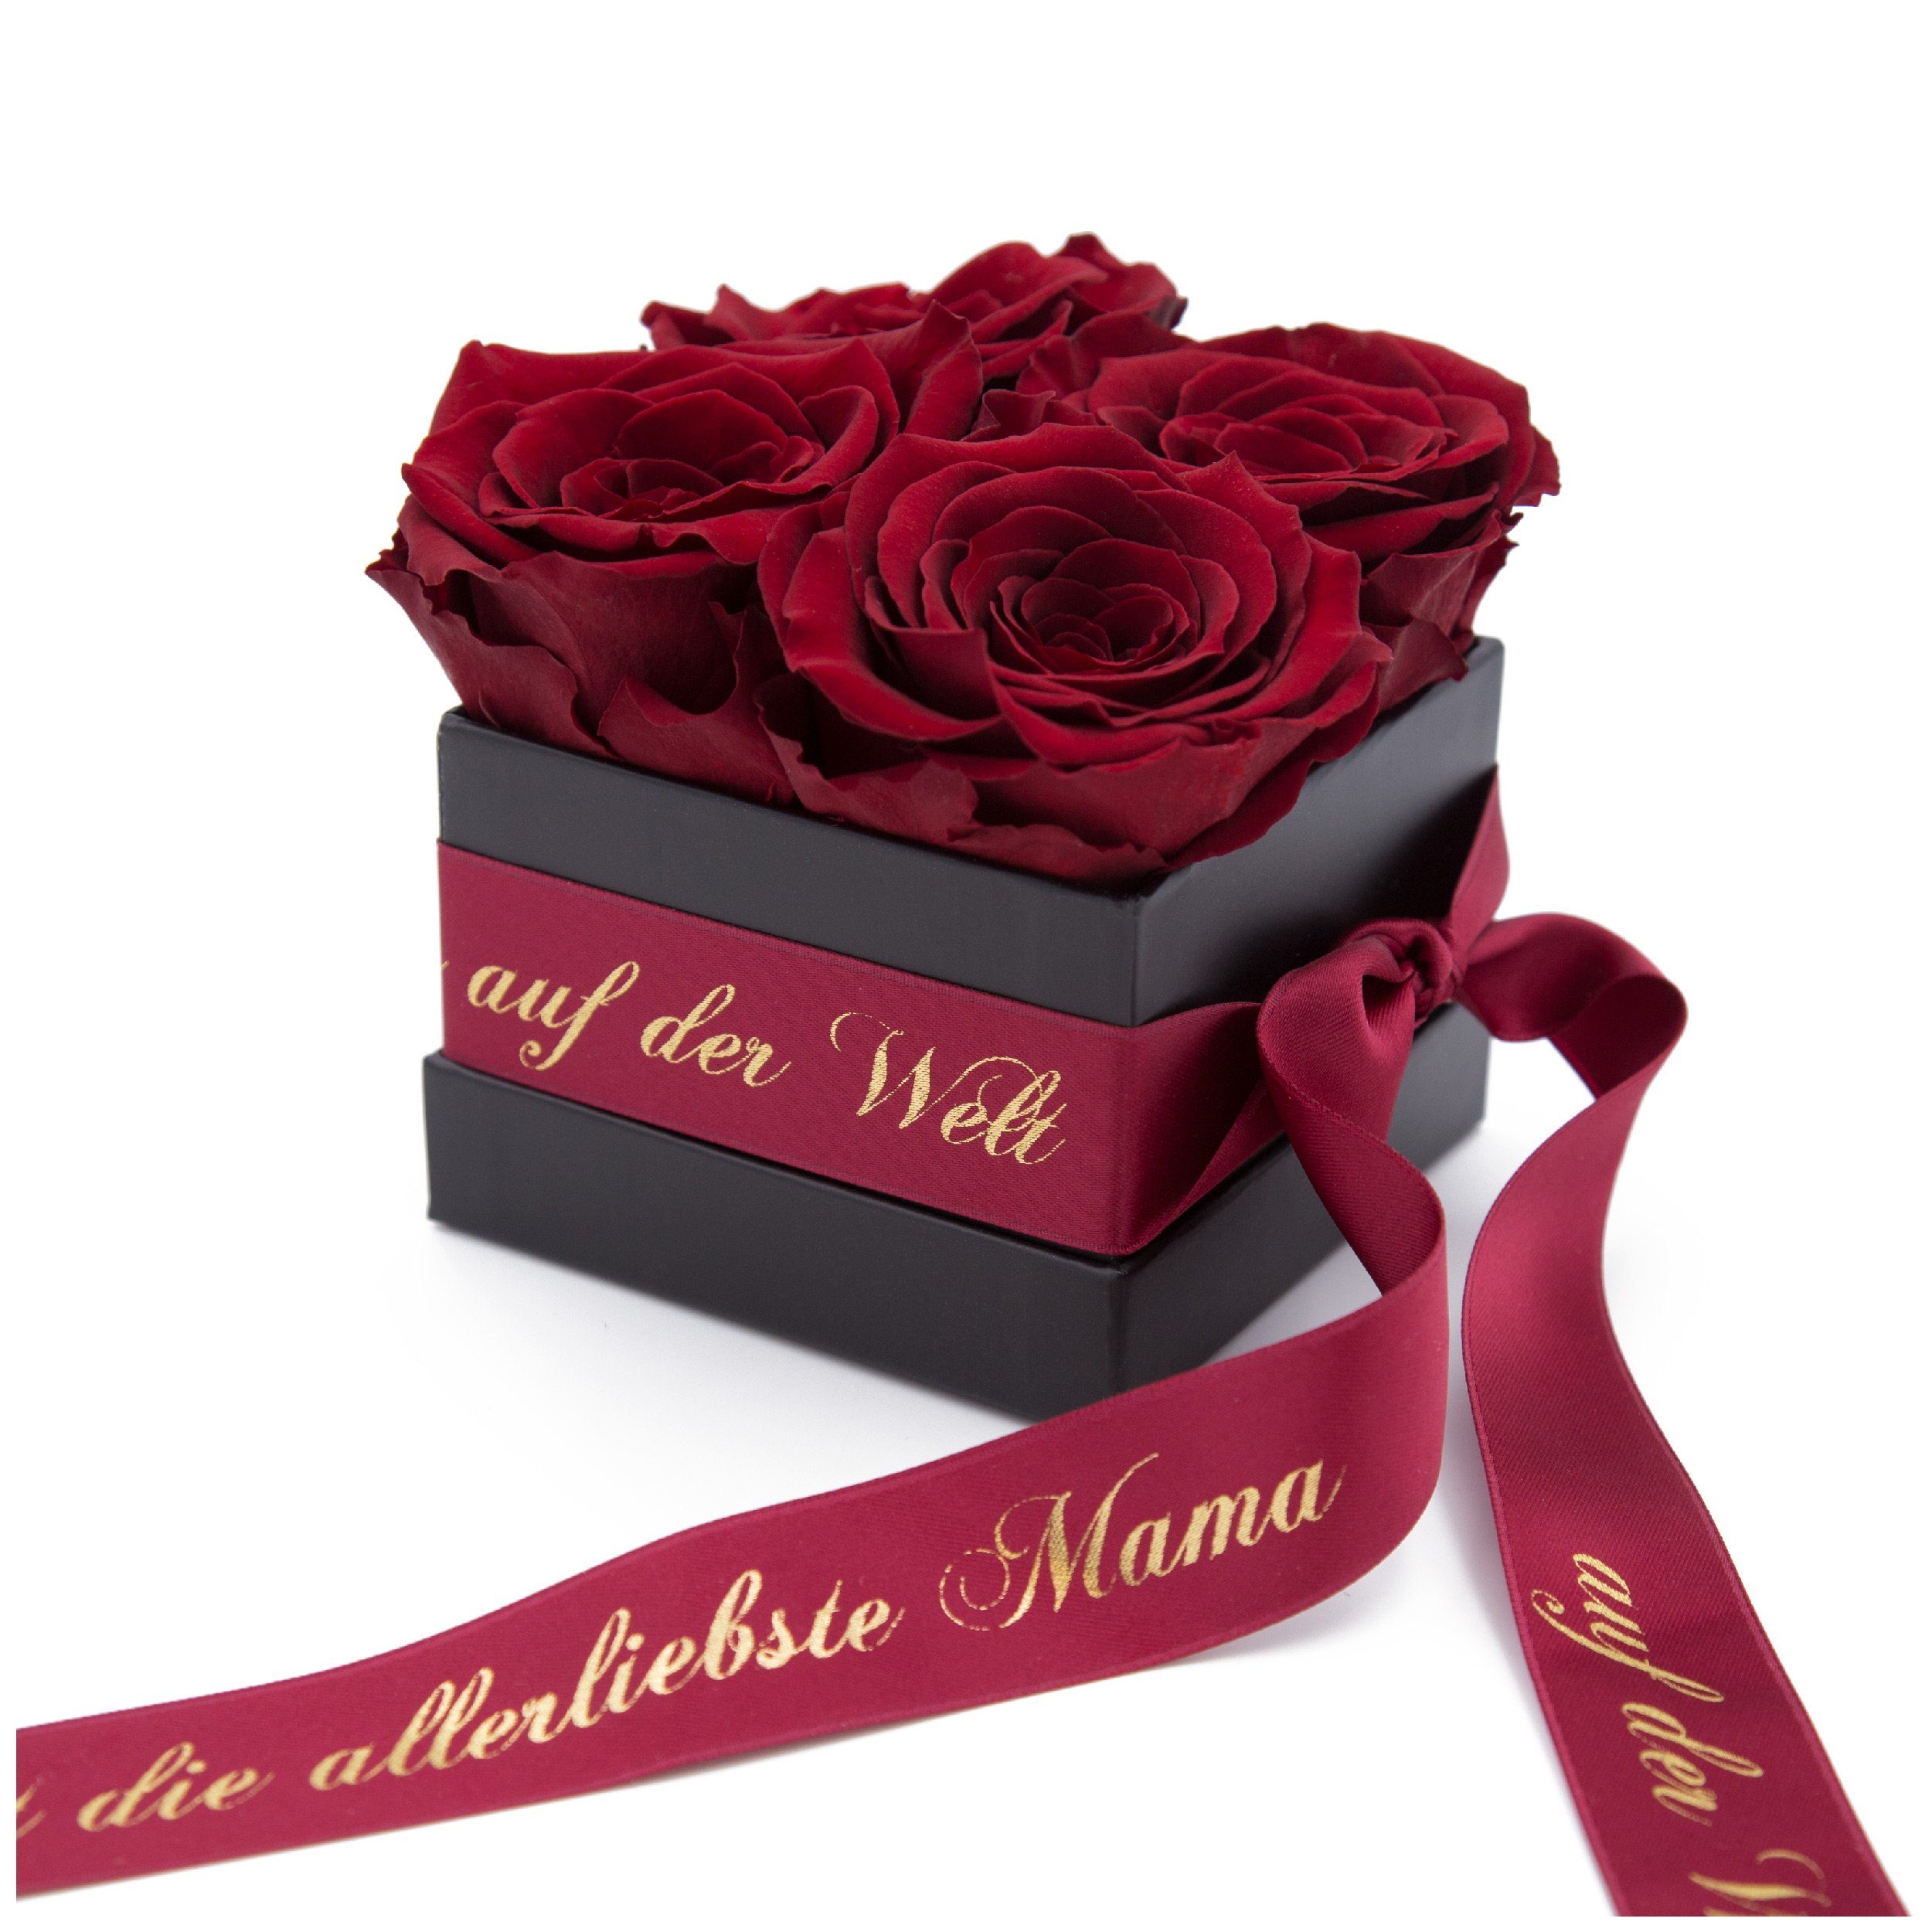 Kunstblume Allerliebste Mama auf der Welt Geschenk Rosenbox 4 konservierte Rosen Rose, ROSEMARIE SCHULZ Heidelberg, Höhe 8,5 cm, Echte Rosen haltbar 3 Jahre Burgundy